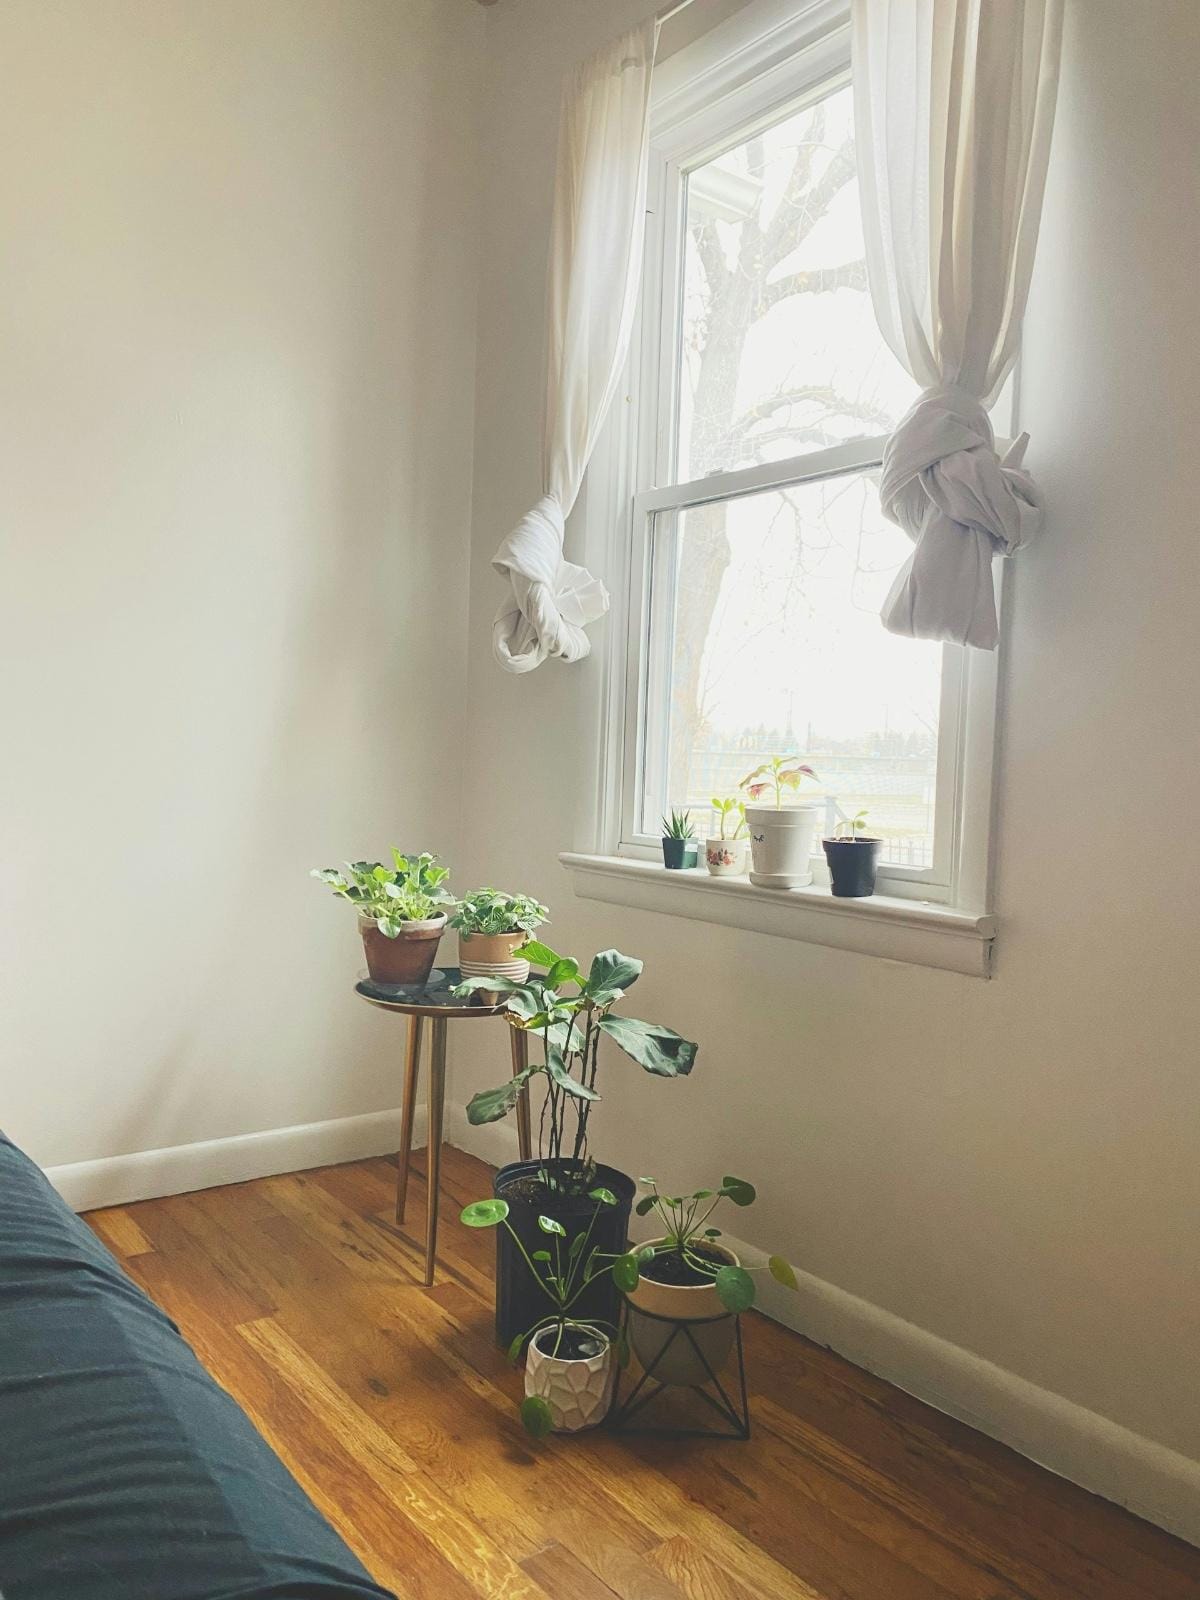 zugezogene Vorhänge und Pflanzen in einem Fenster